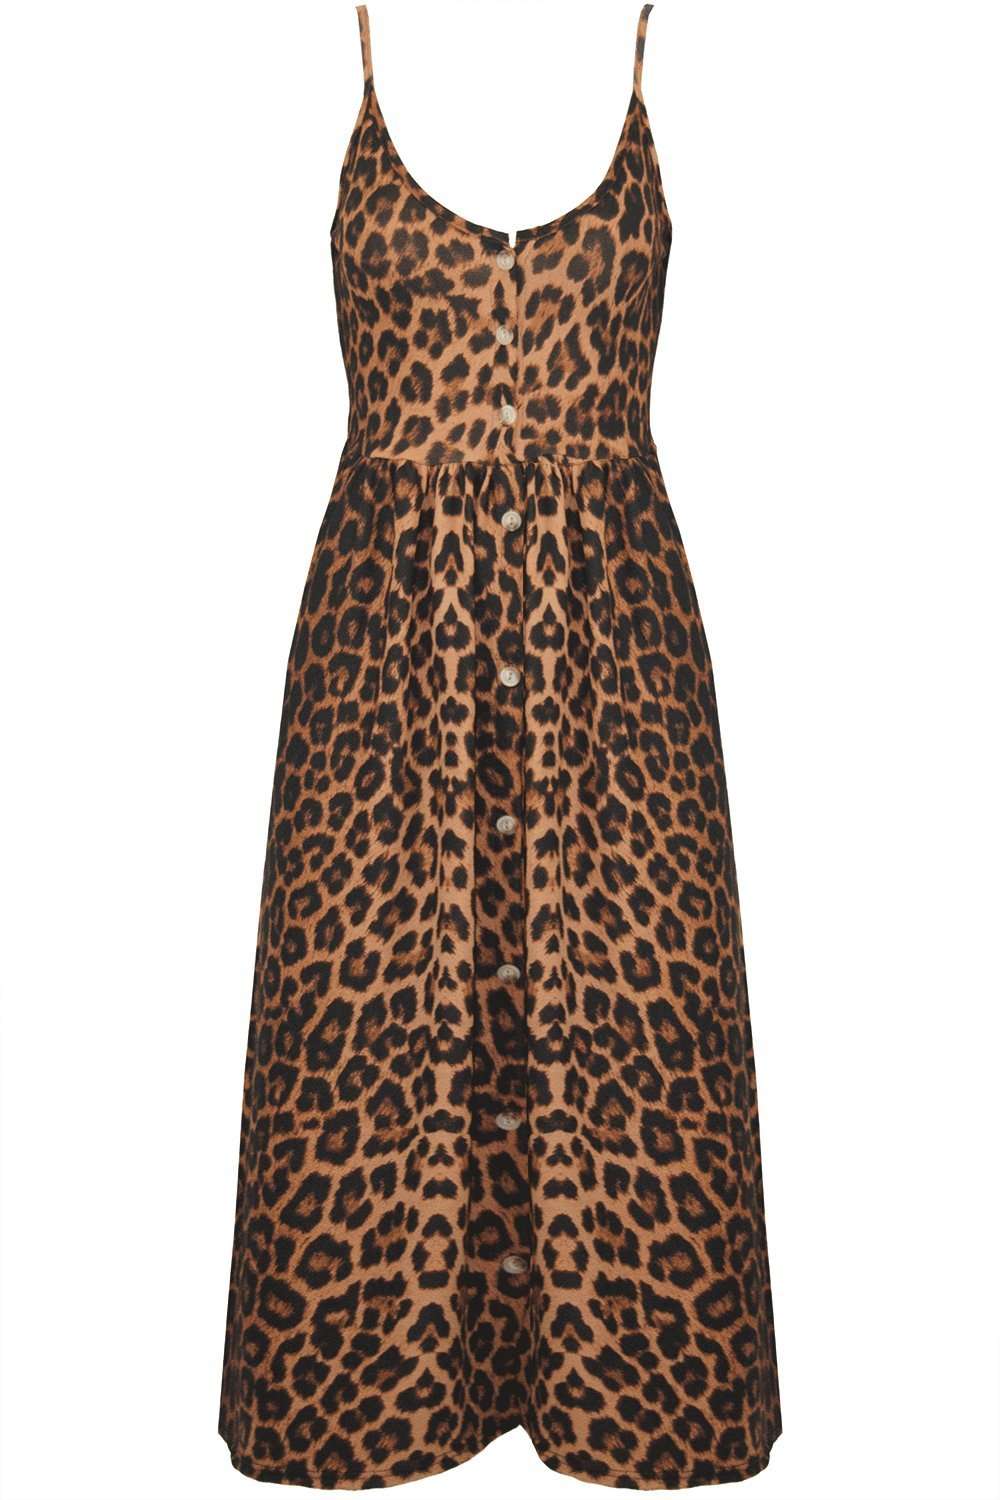 Breana Button Up Strappy Leopard Print Dress - bejealous-com